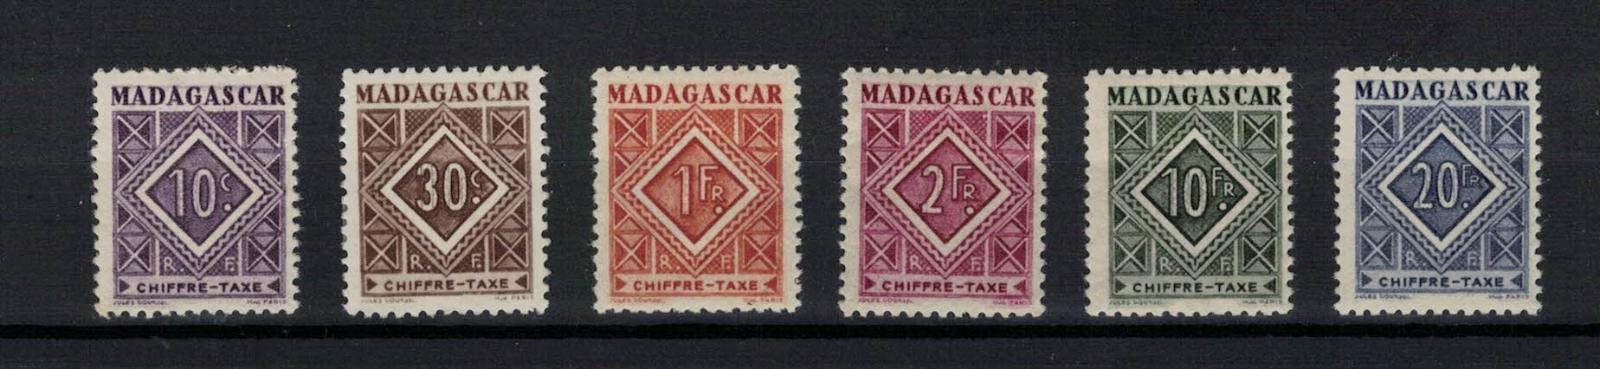 Madagaskar 1947 "Values in Ornament" sestava 6 známek